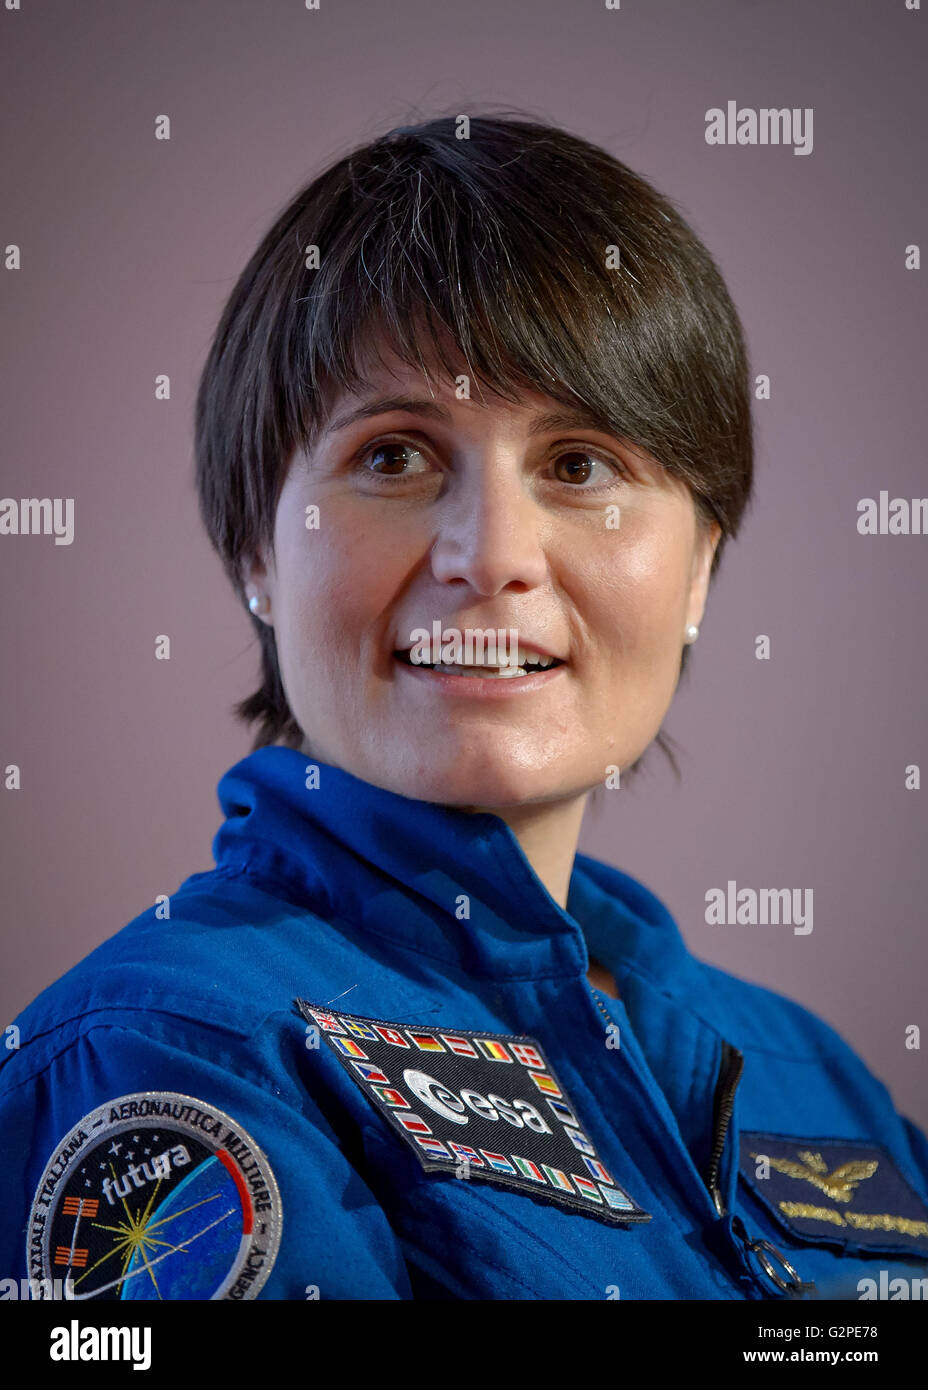 Astronaut Samantha Cristoforetti of ESA (European Space Agency) Stock Photo